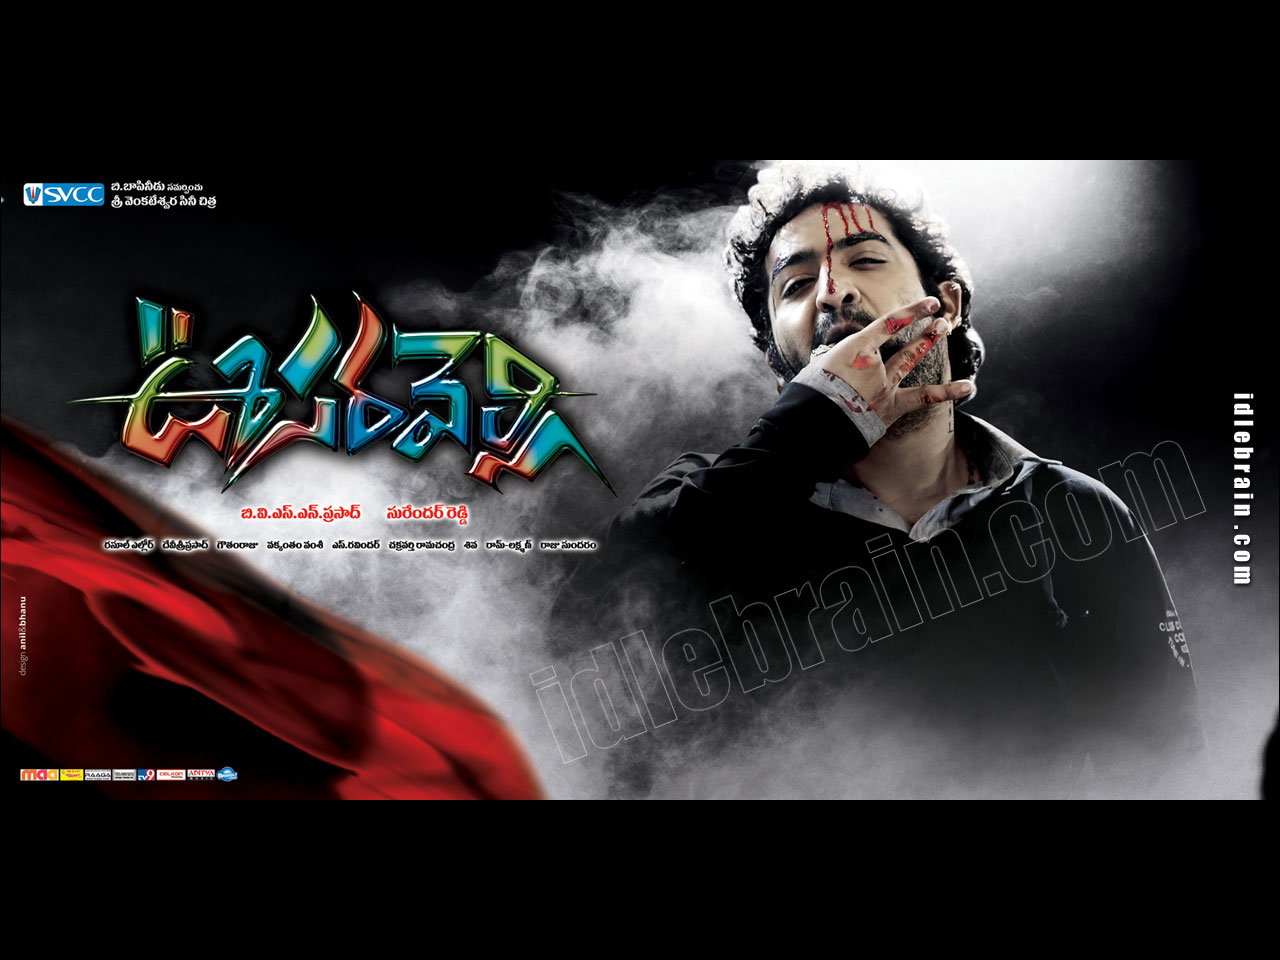 Oosaravelli - Telugu film wallpapers - Telugu cinema - NTR